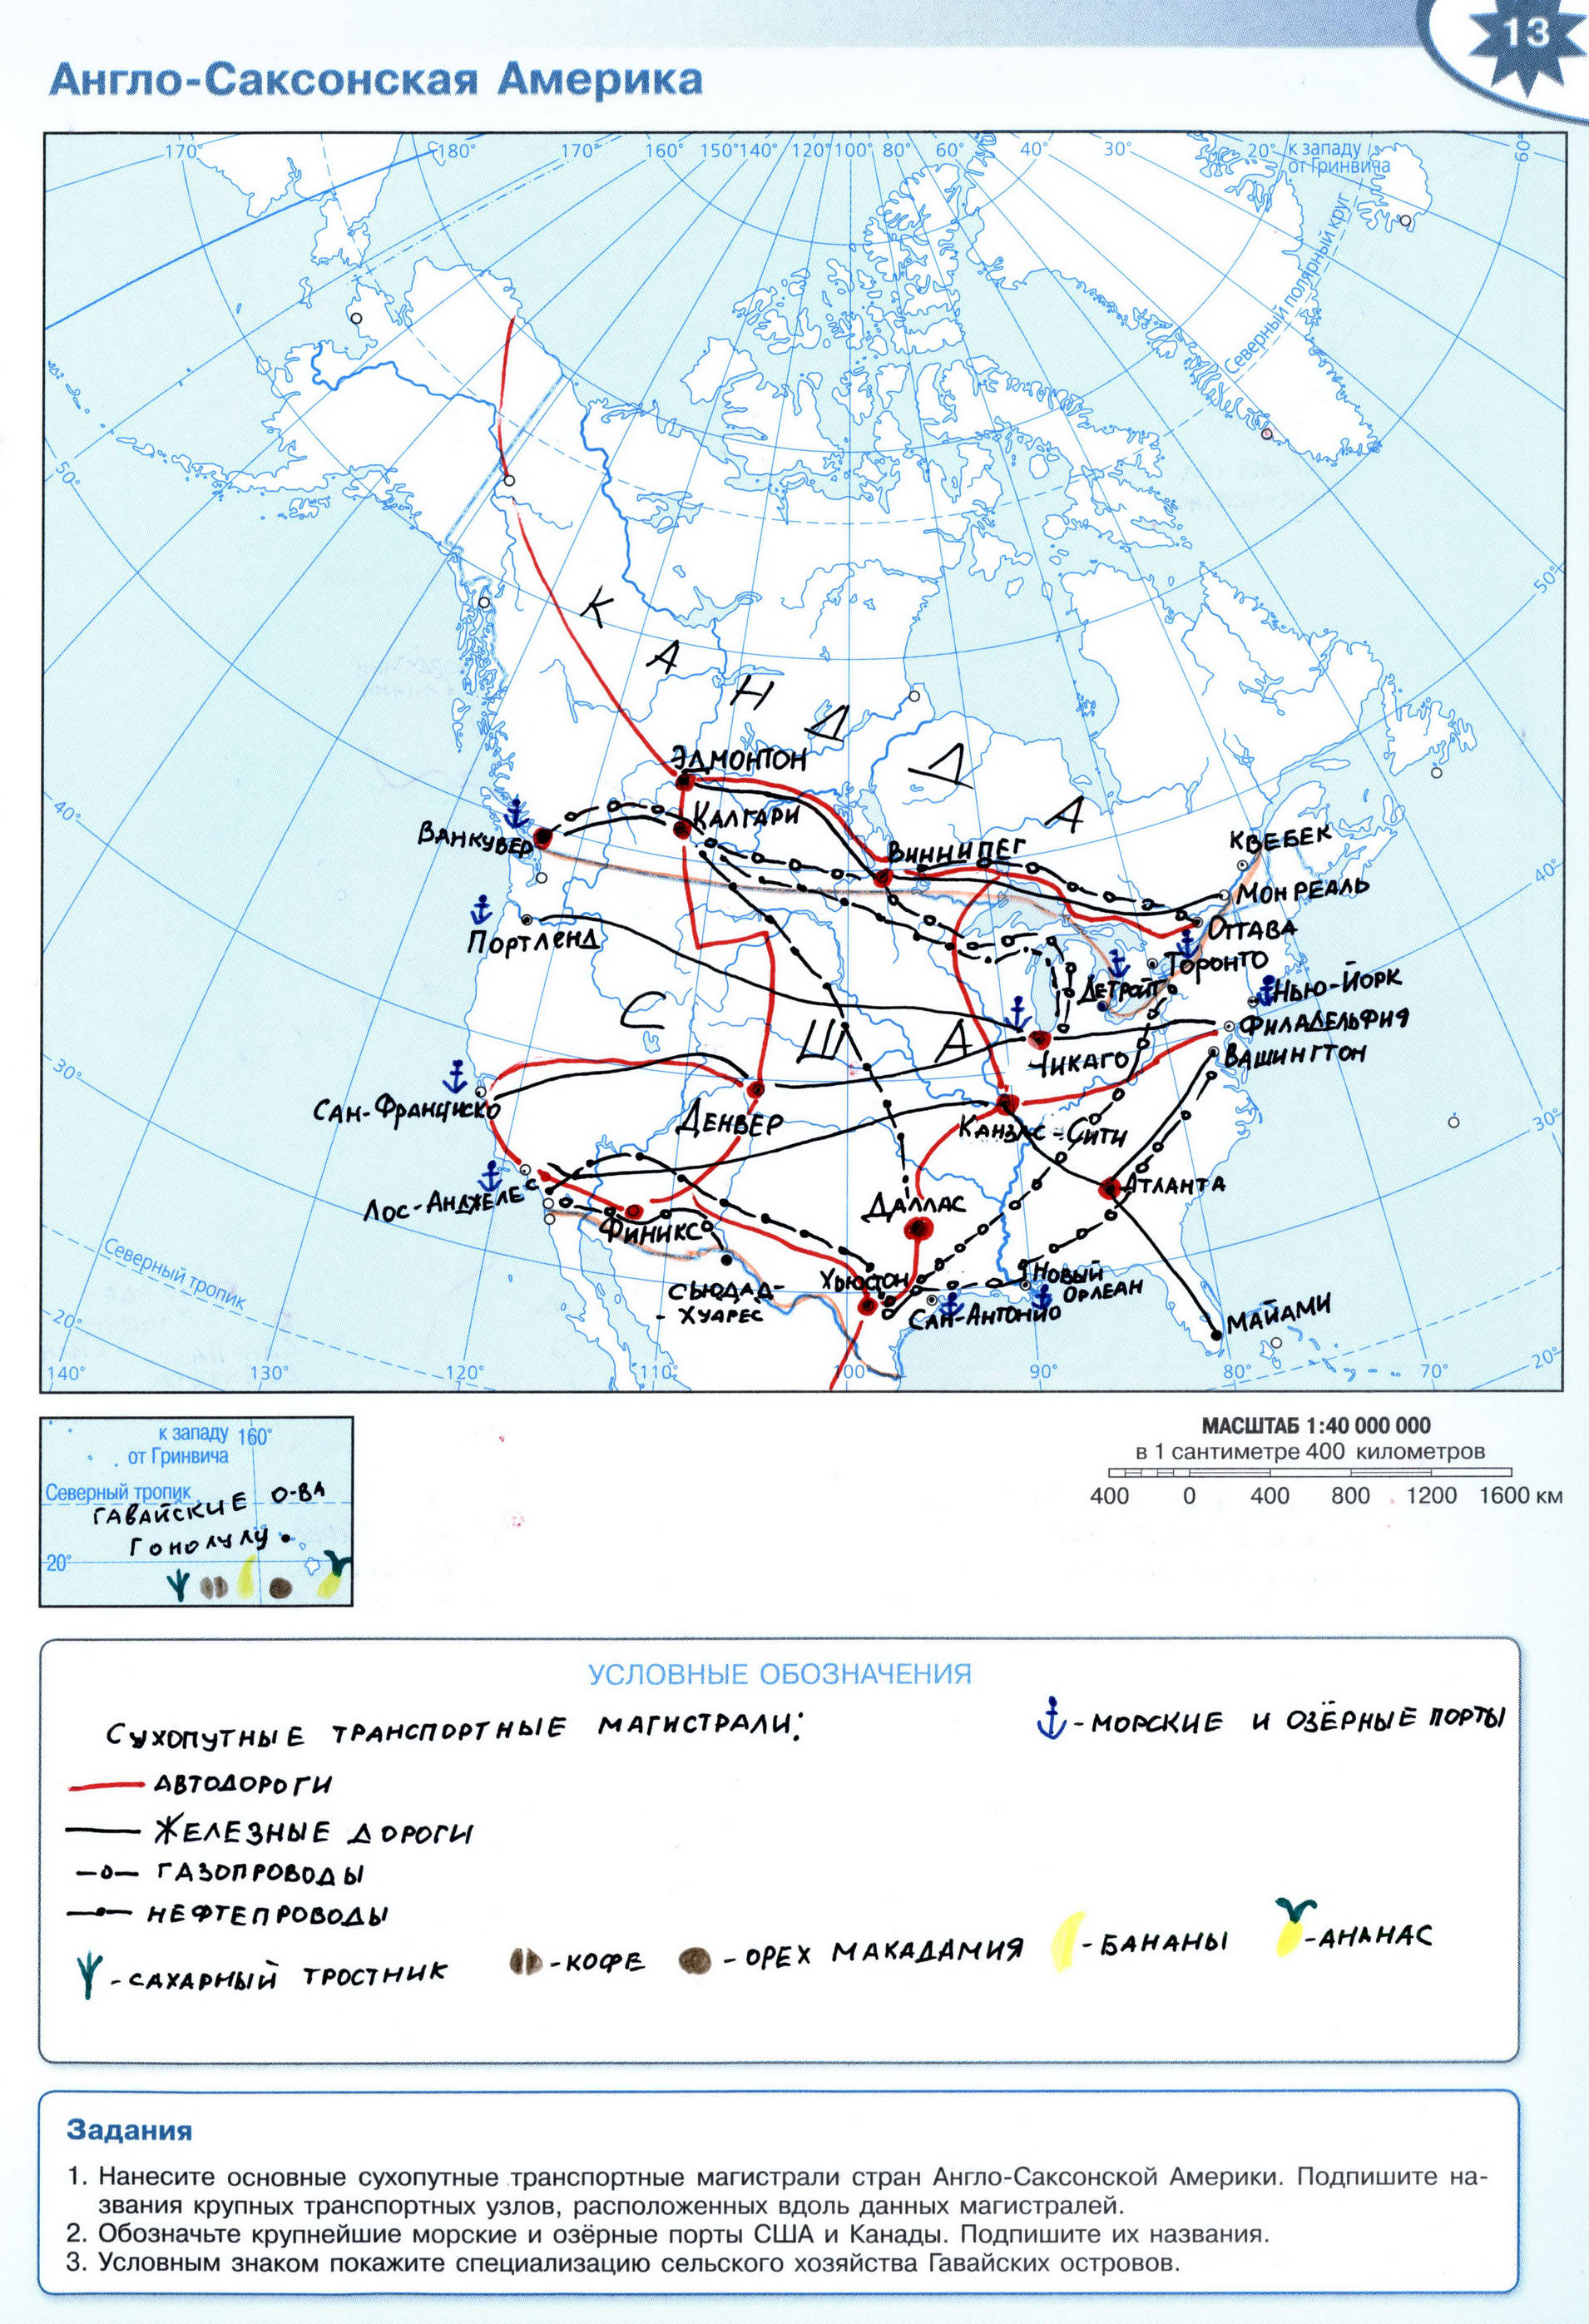 ГДЗ Англо-саксонская Америка контурная карта 10-11 класс география -Решебник